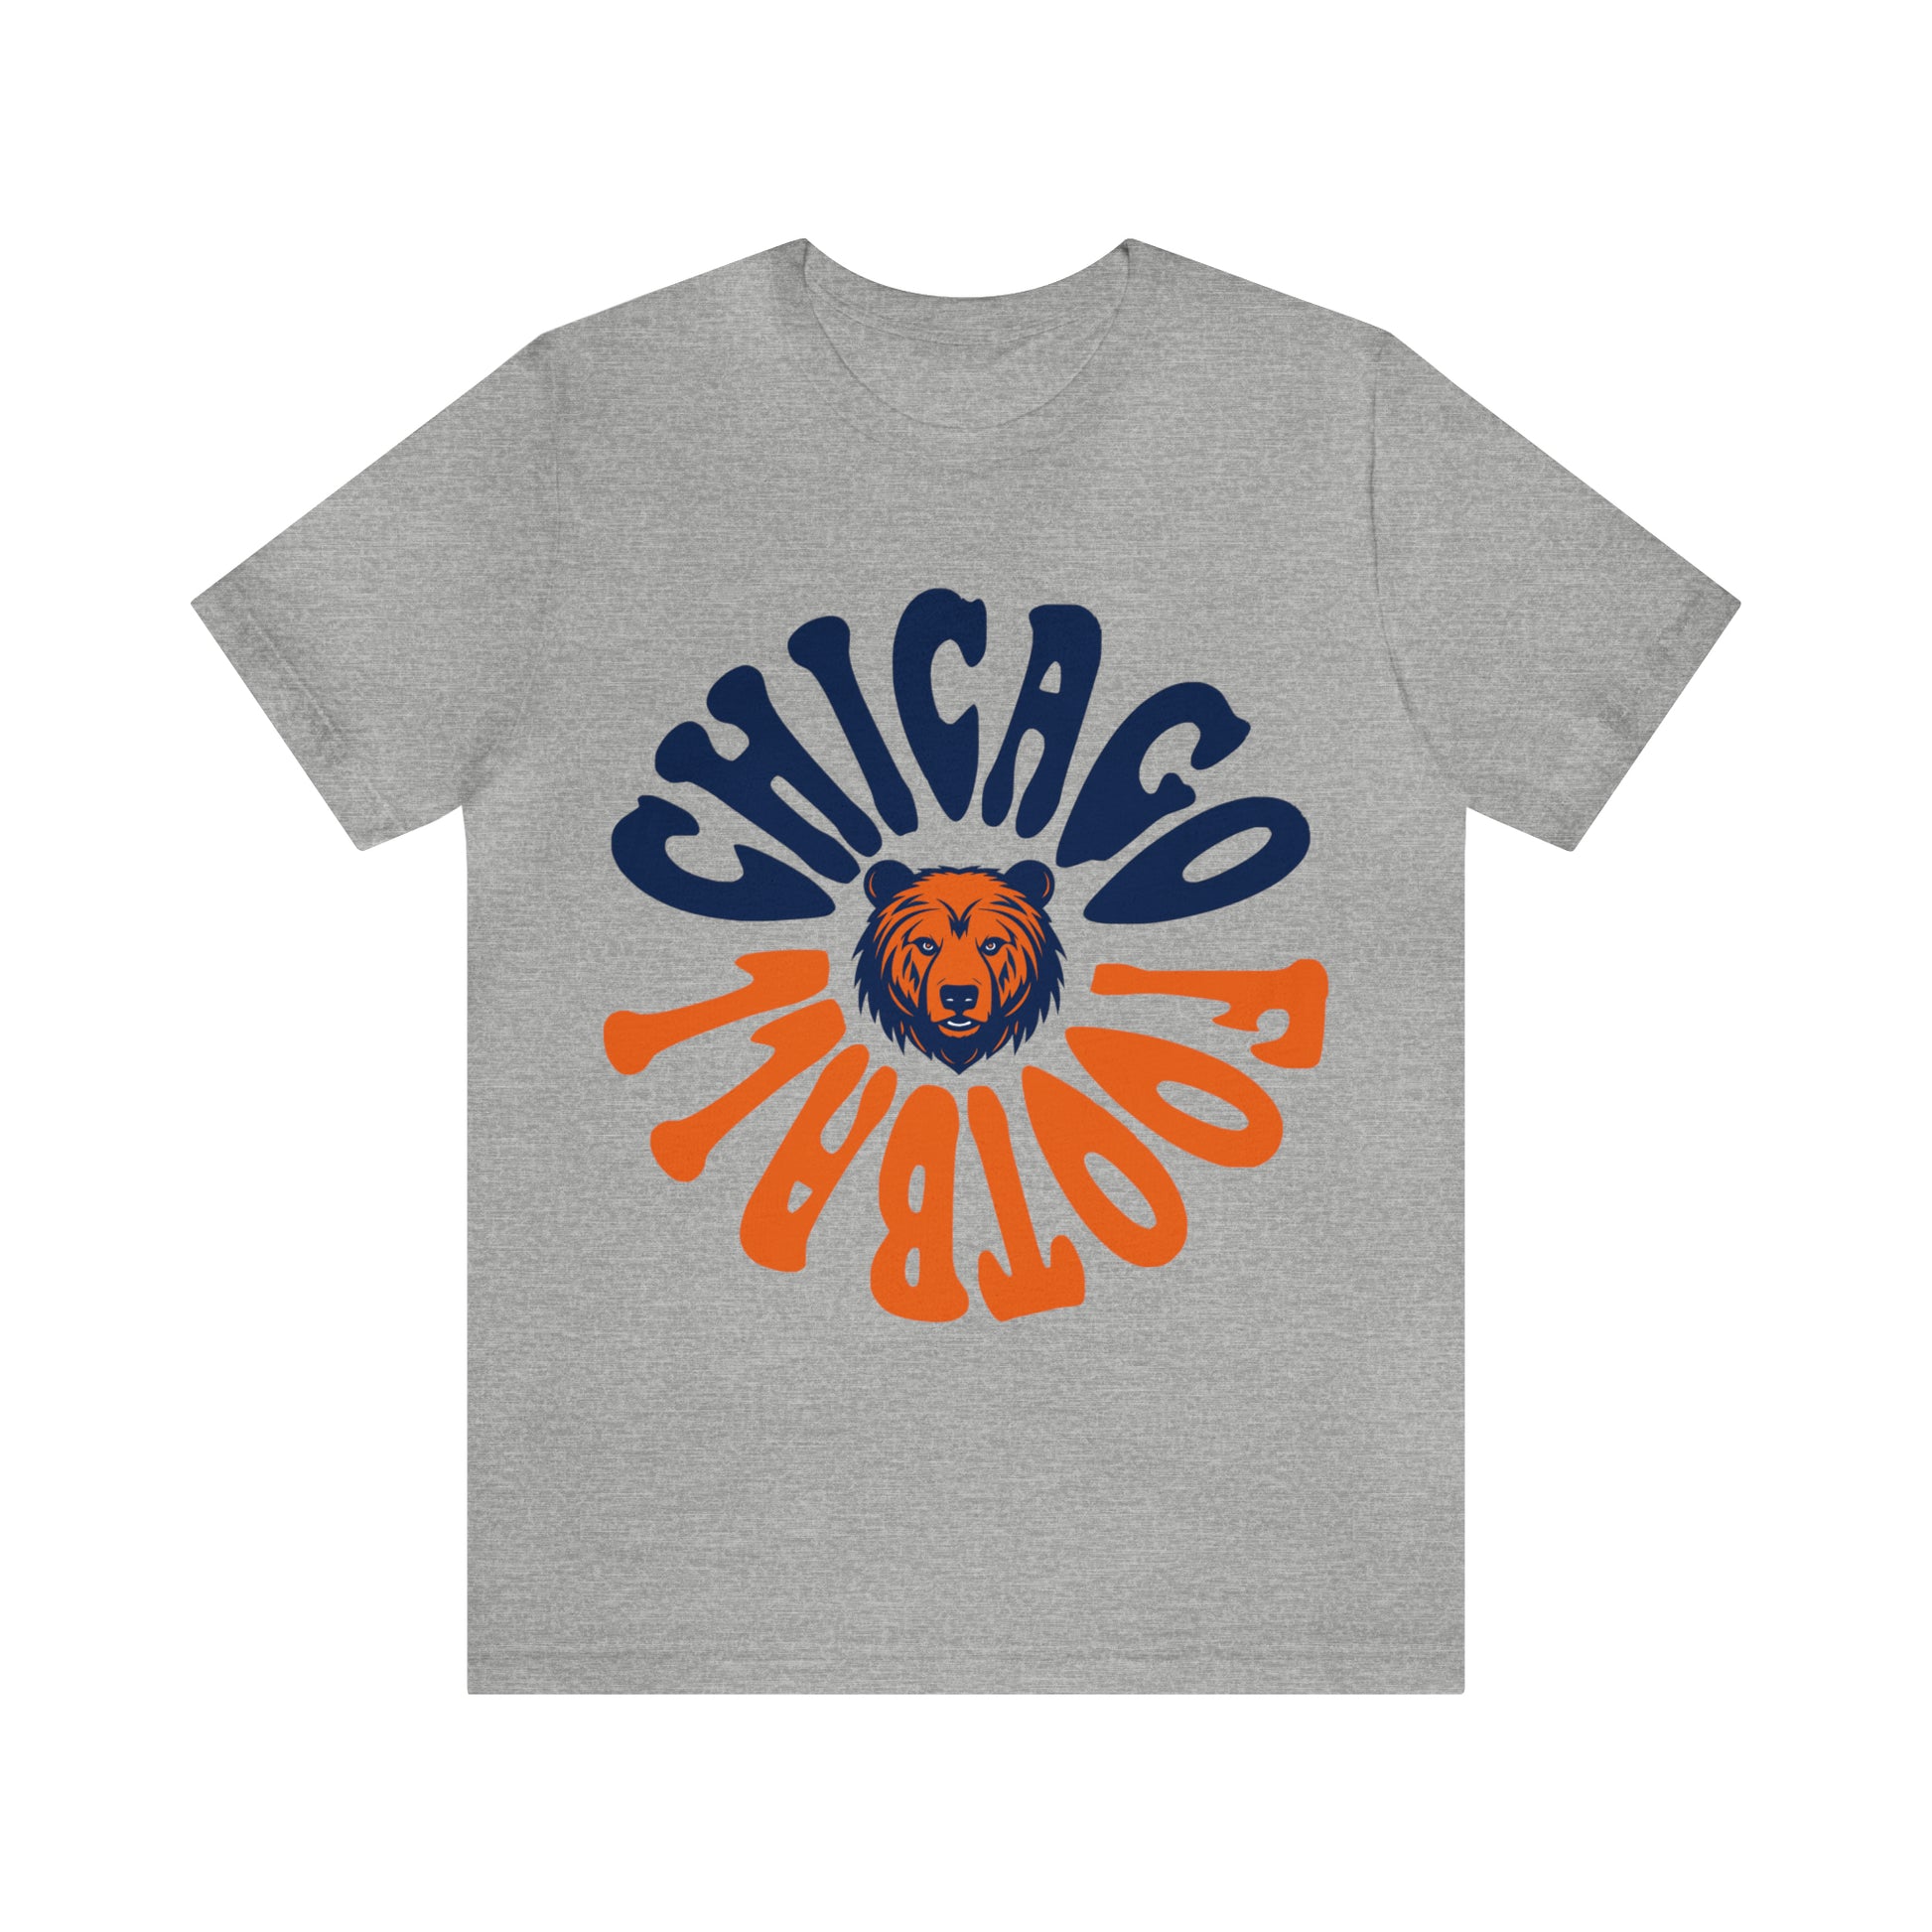 Chicago Bears Football Short Sleeve T-Shirt - Hippy Retro Men's & Women's Oversized Tee - Design 2